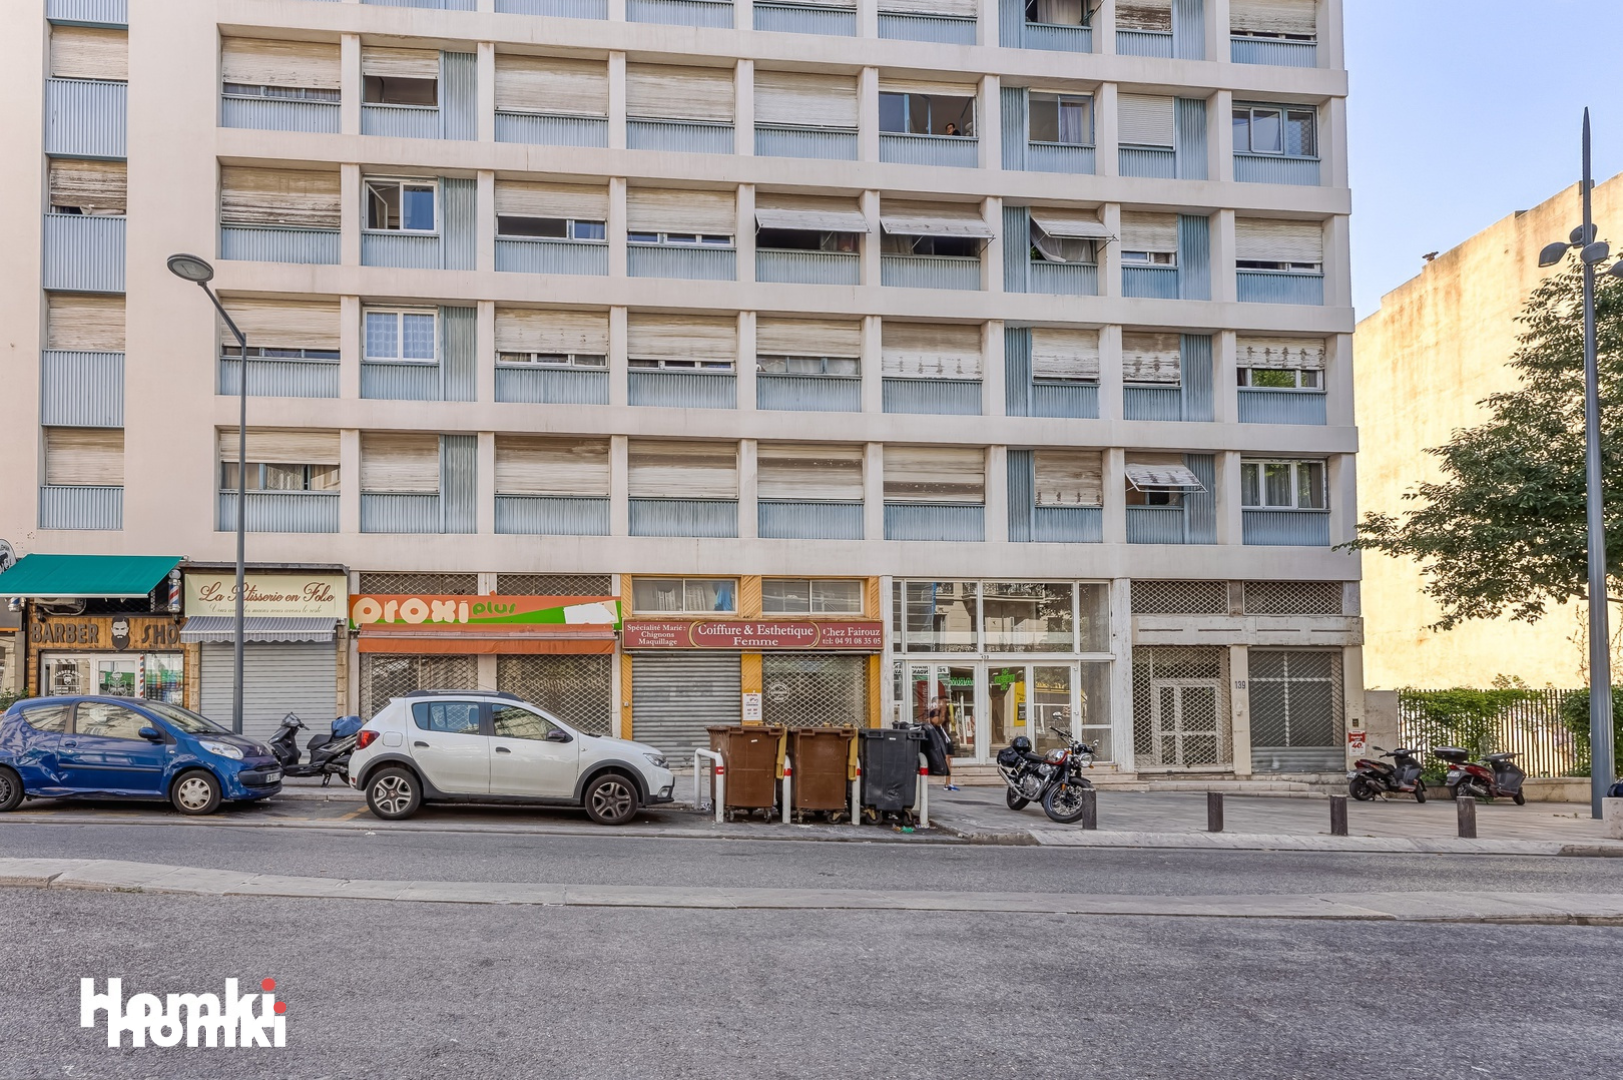 Homki - Vente Appartement  de 31.0 m² à Marseille 13003